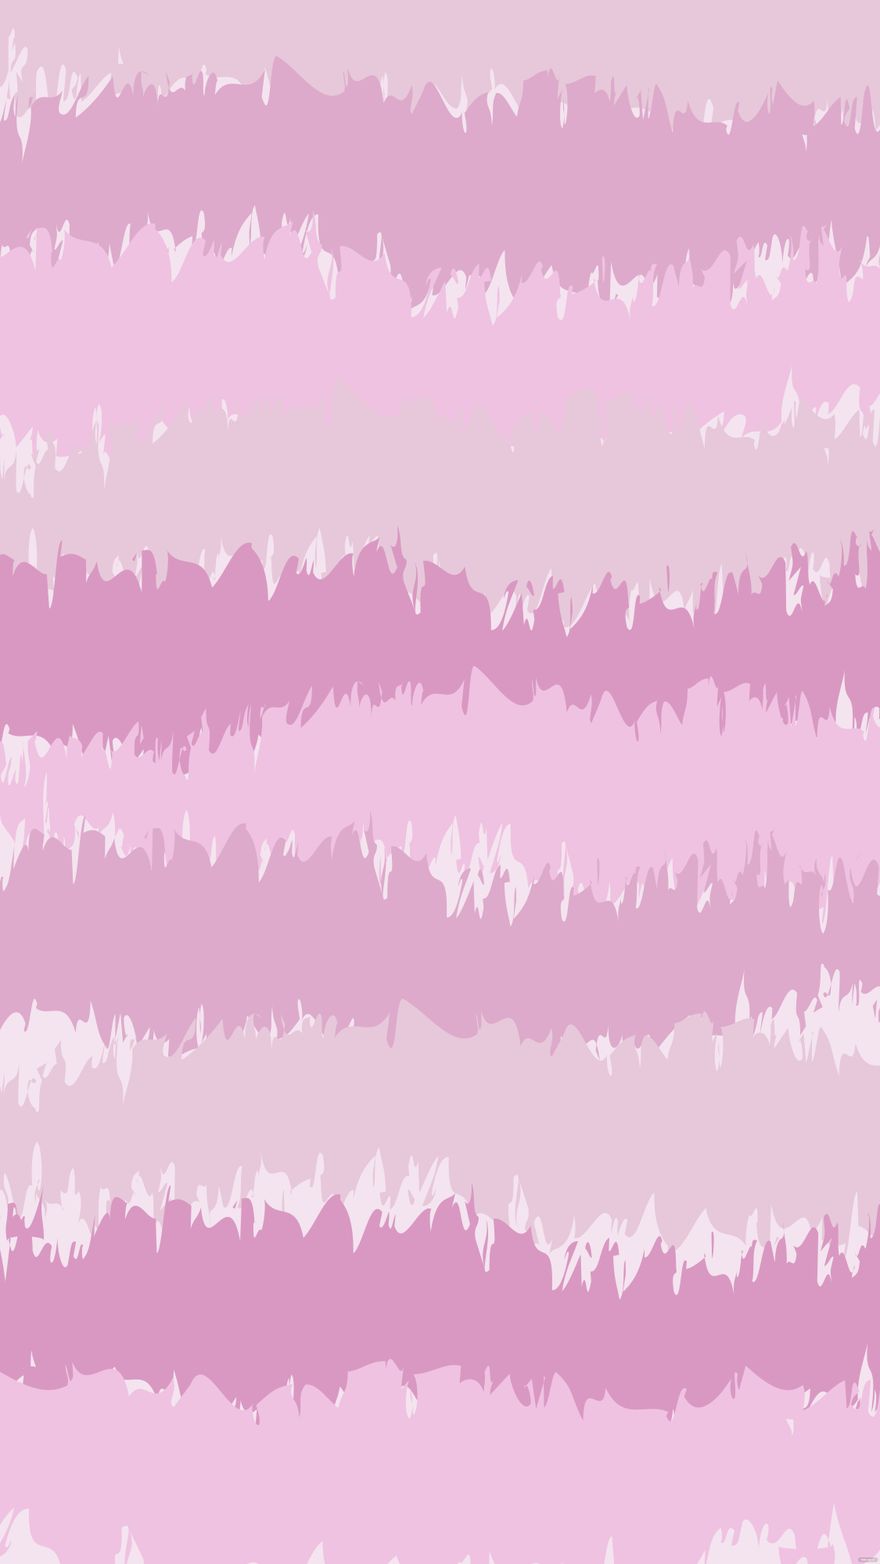 Pink iPhone Background in Illustrator, SVG, JPG, EPS - Download